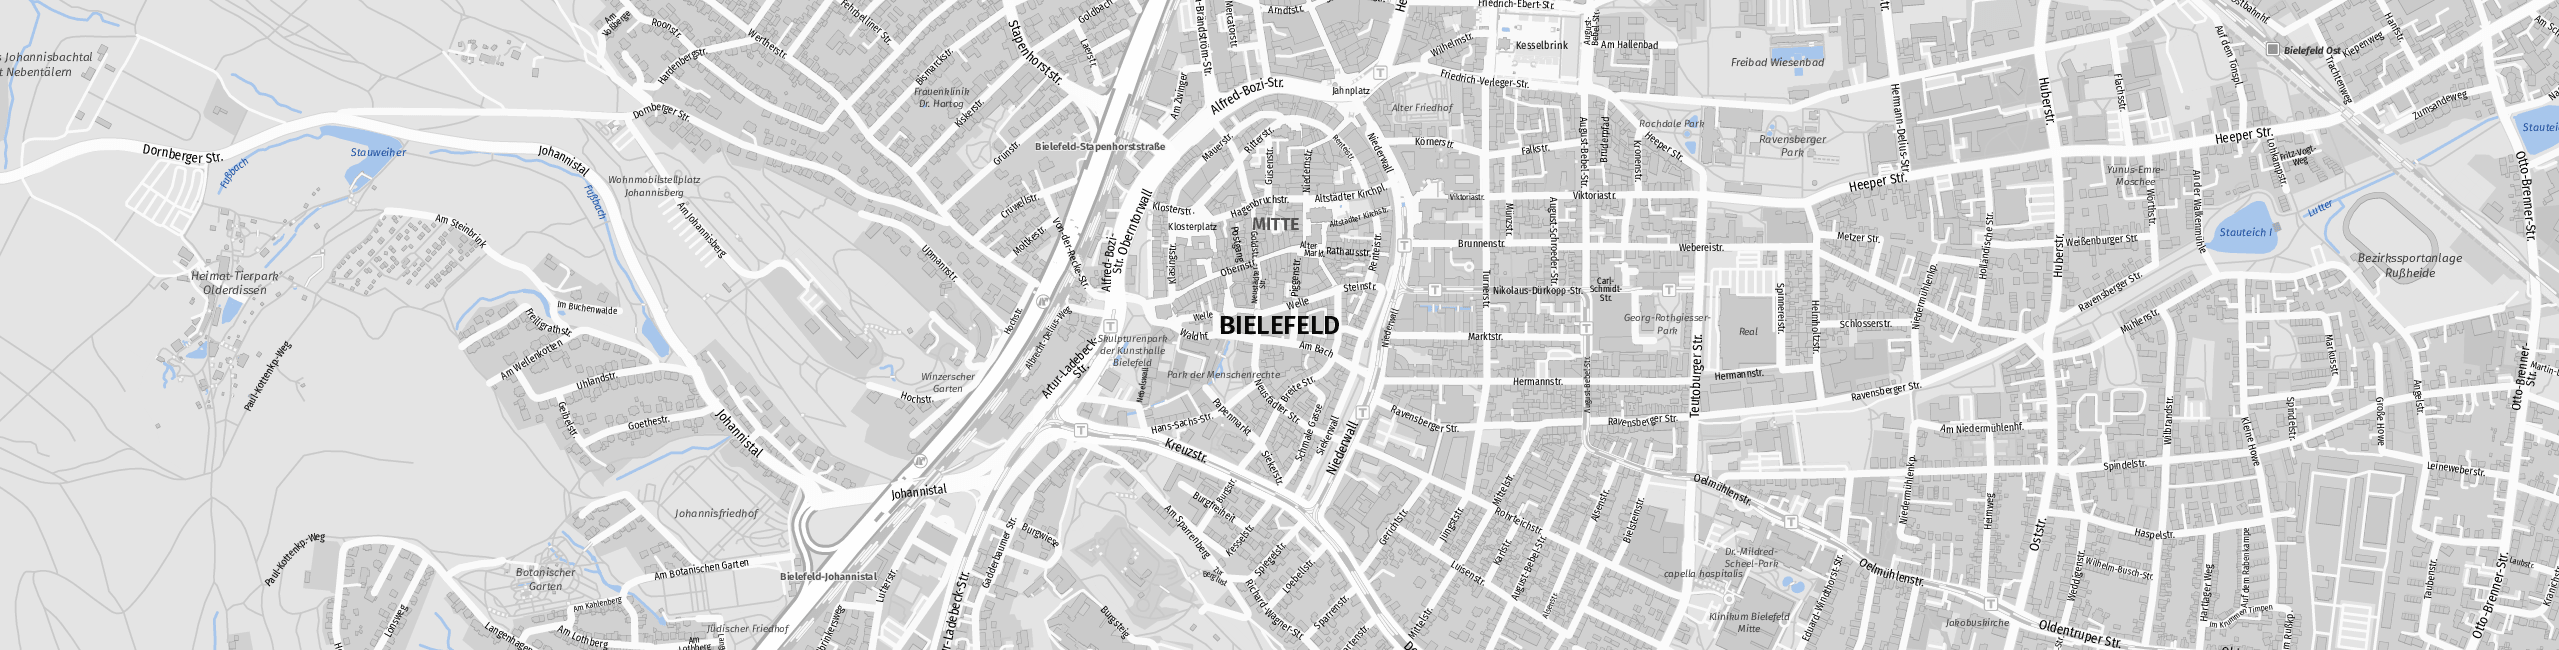 Stadtplan Bielefeld zum Downloaden.